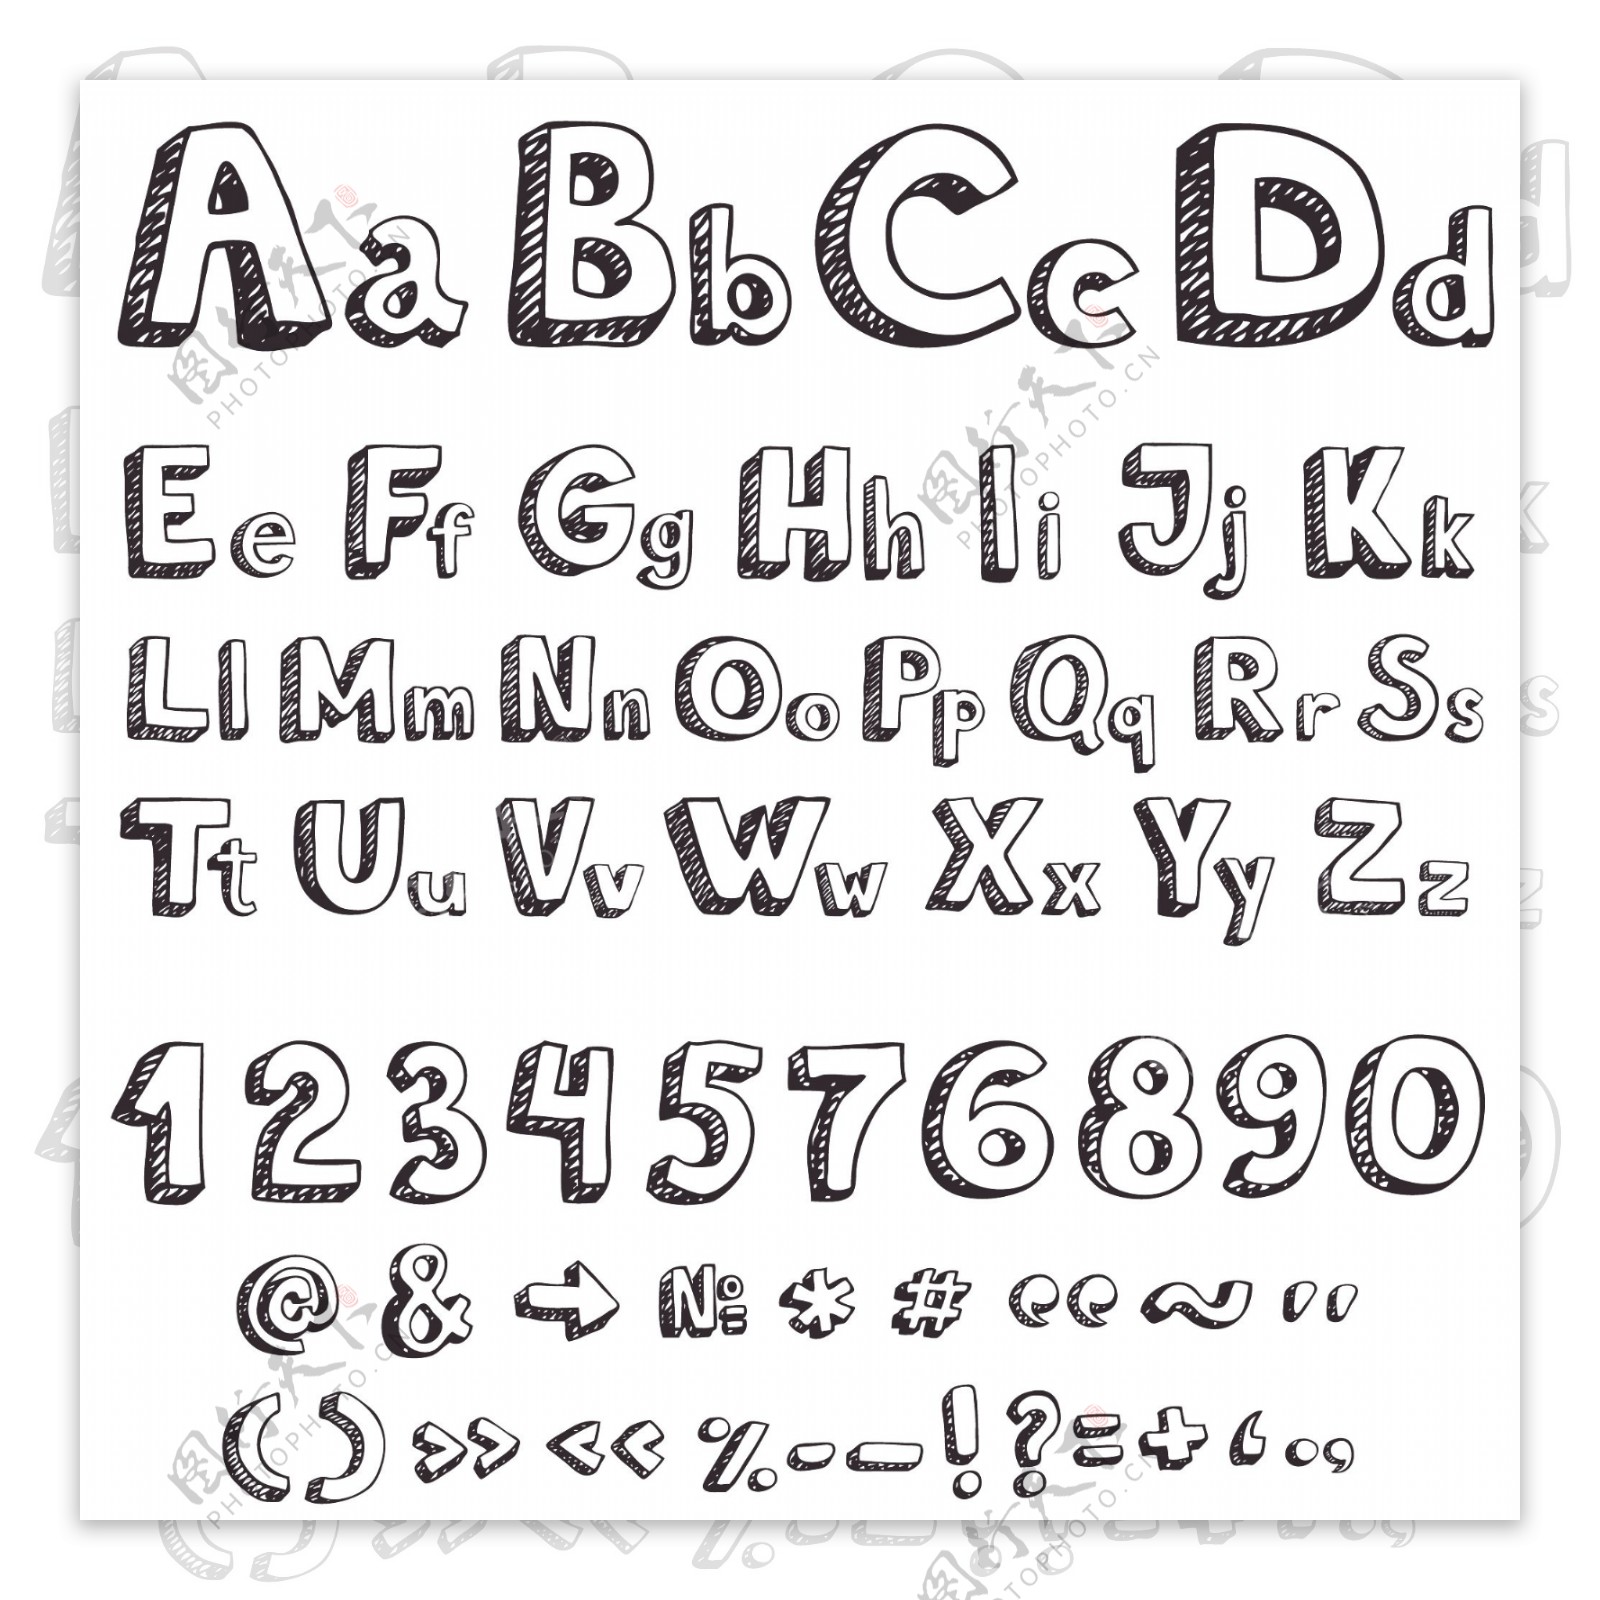 3D立体英文字体设计图片